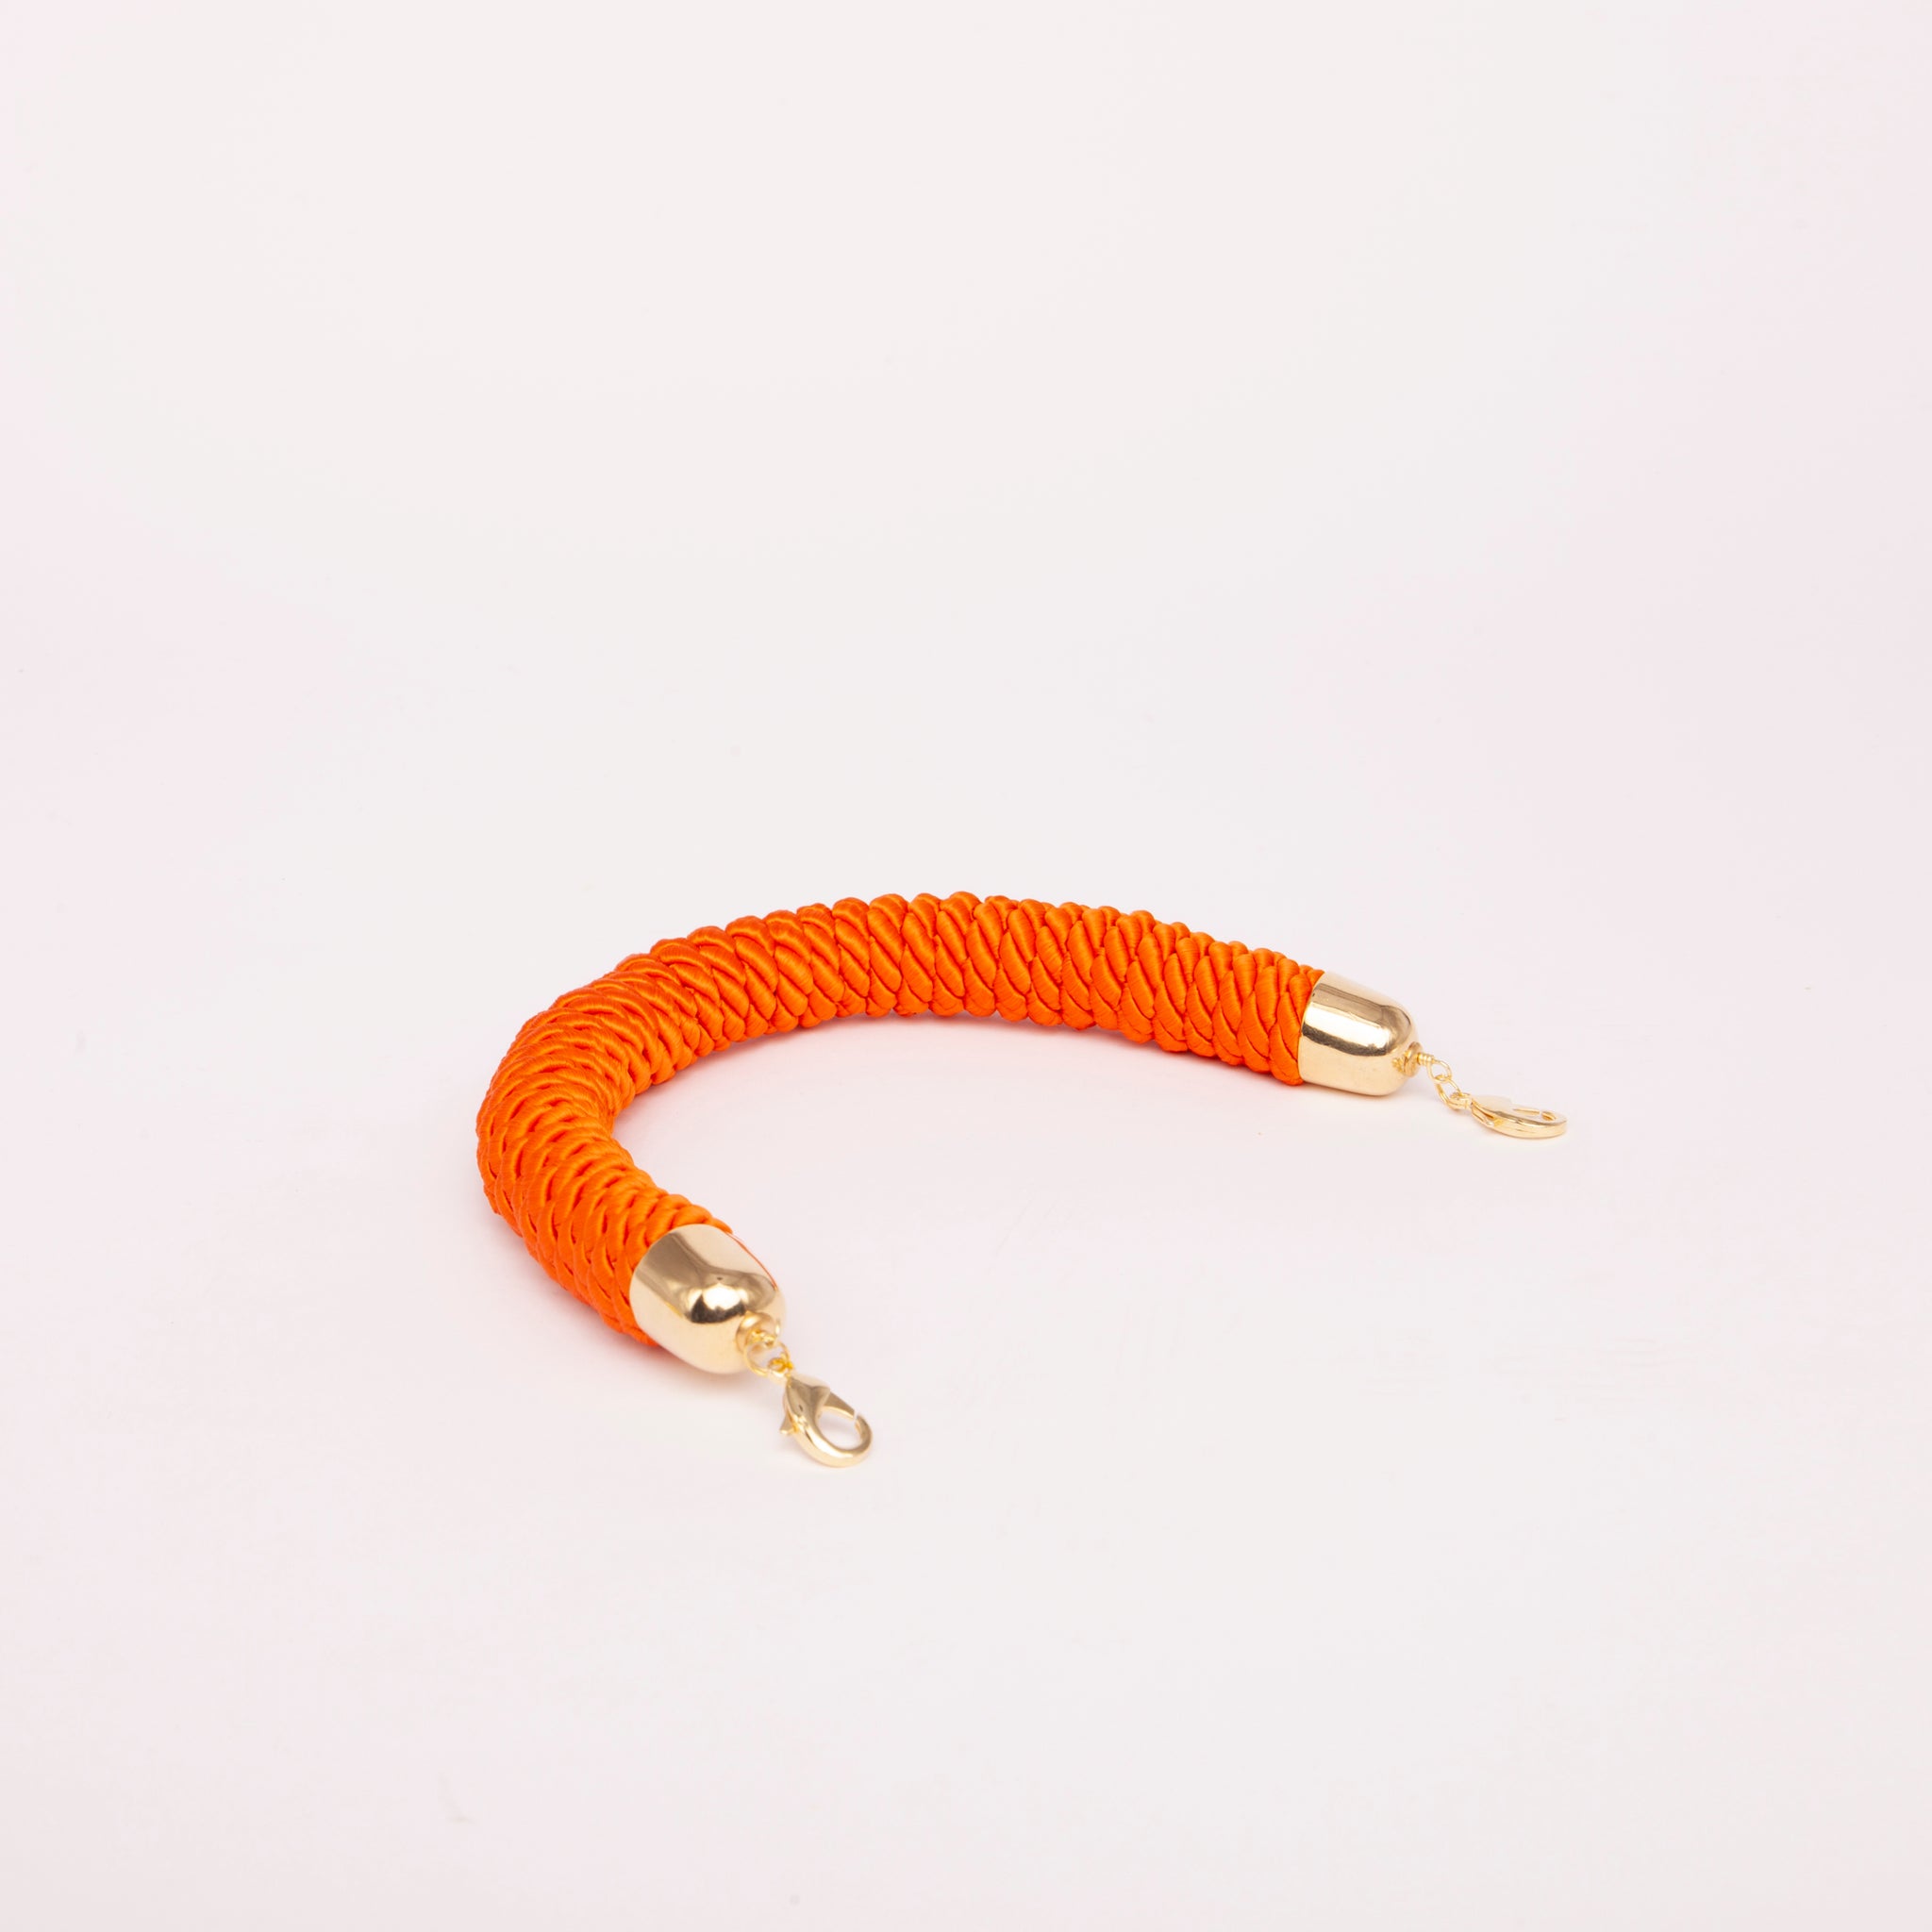 Manico Maxi Silk Handle in colorazione arancione